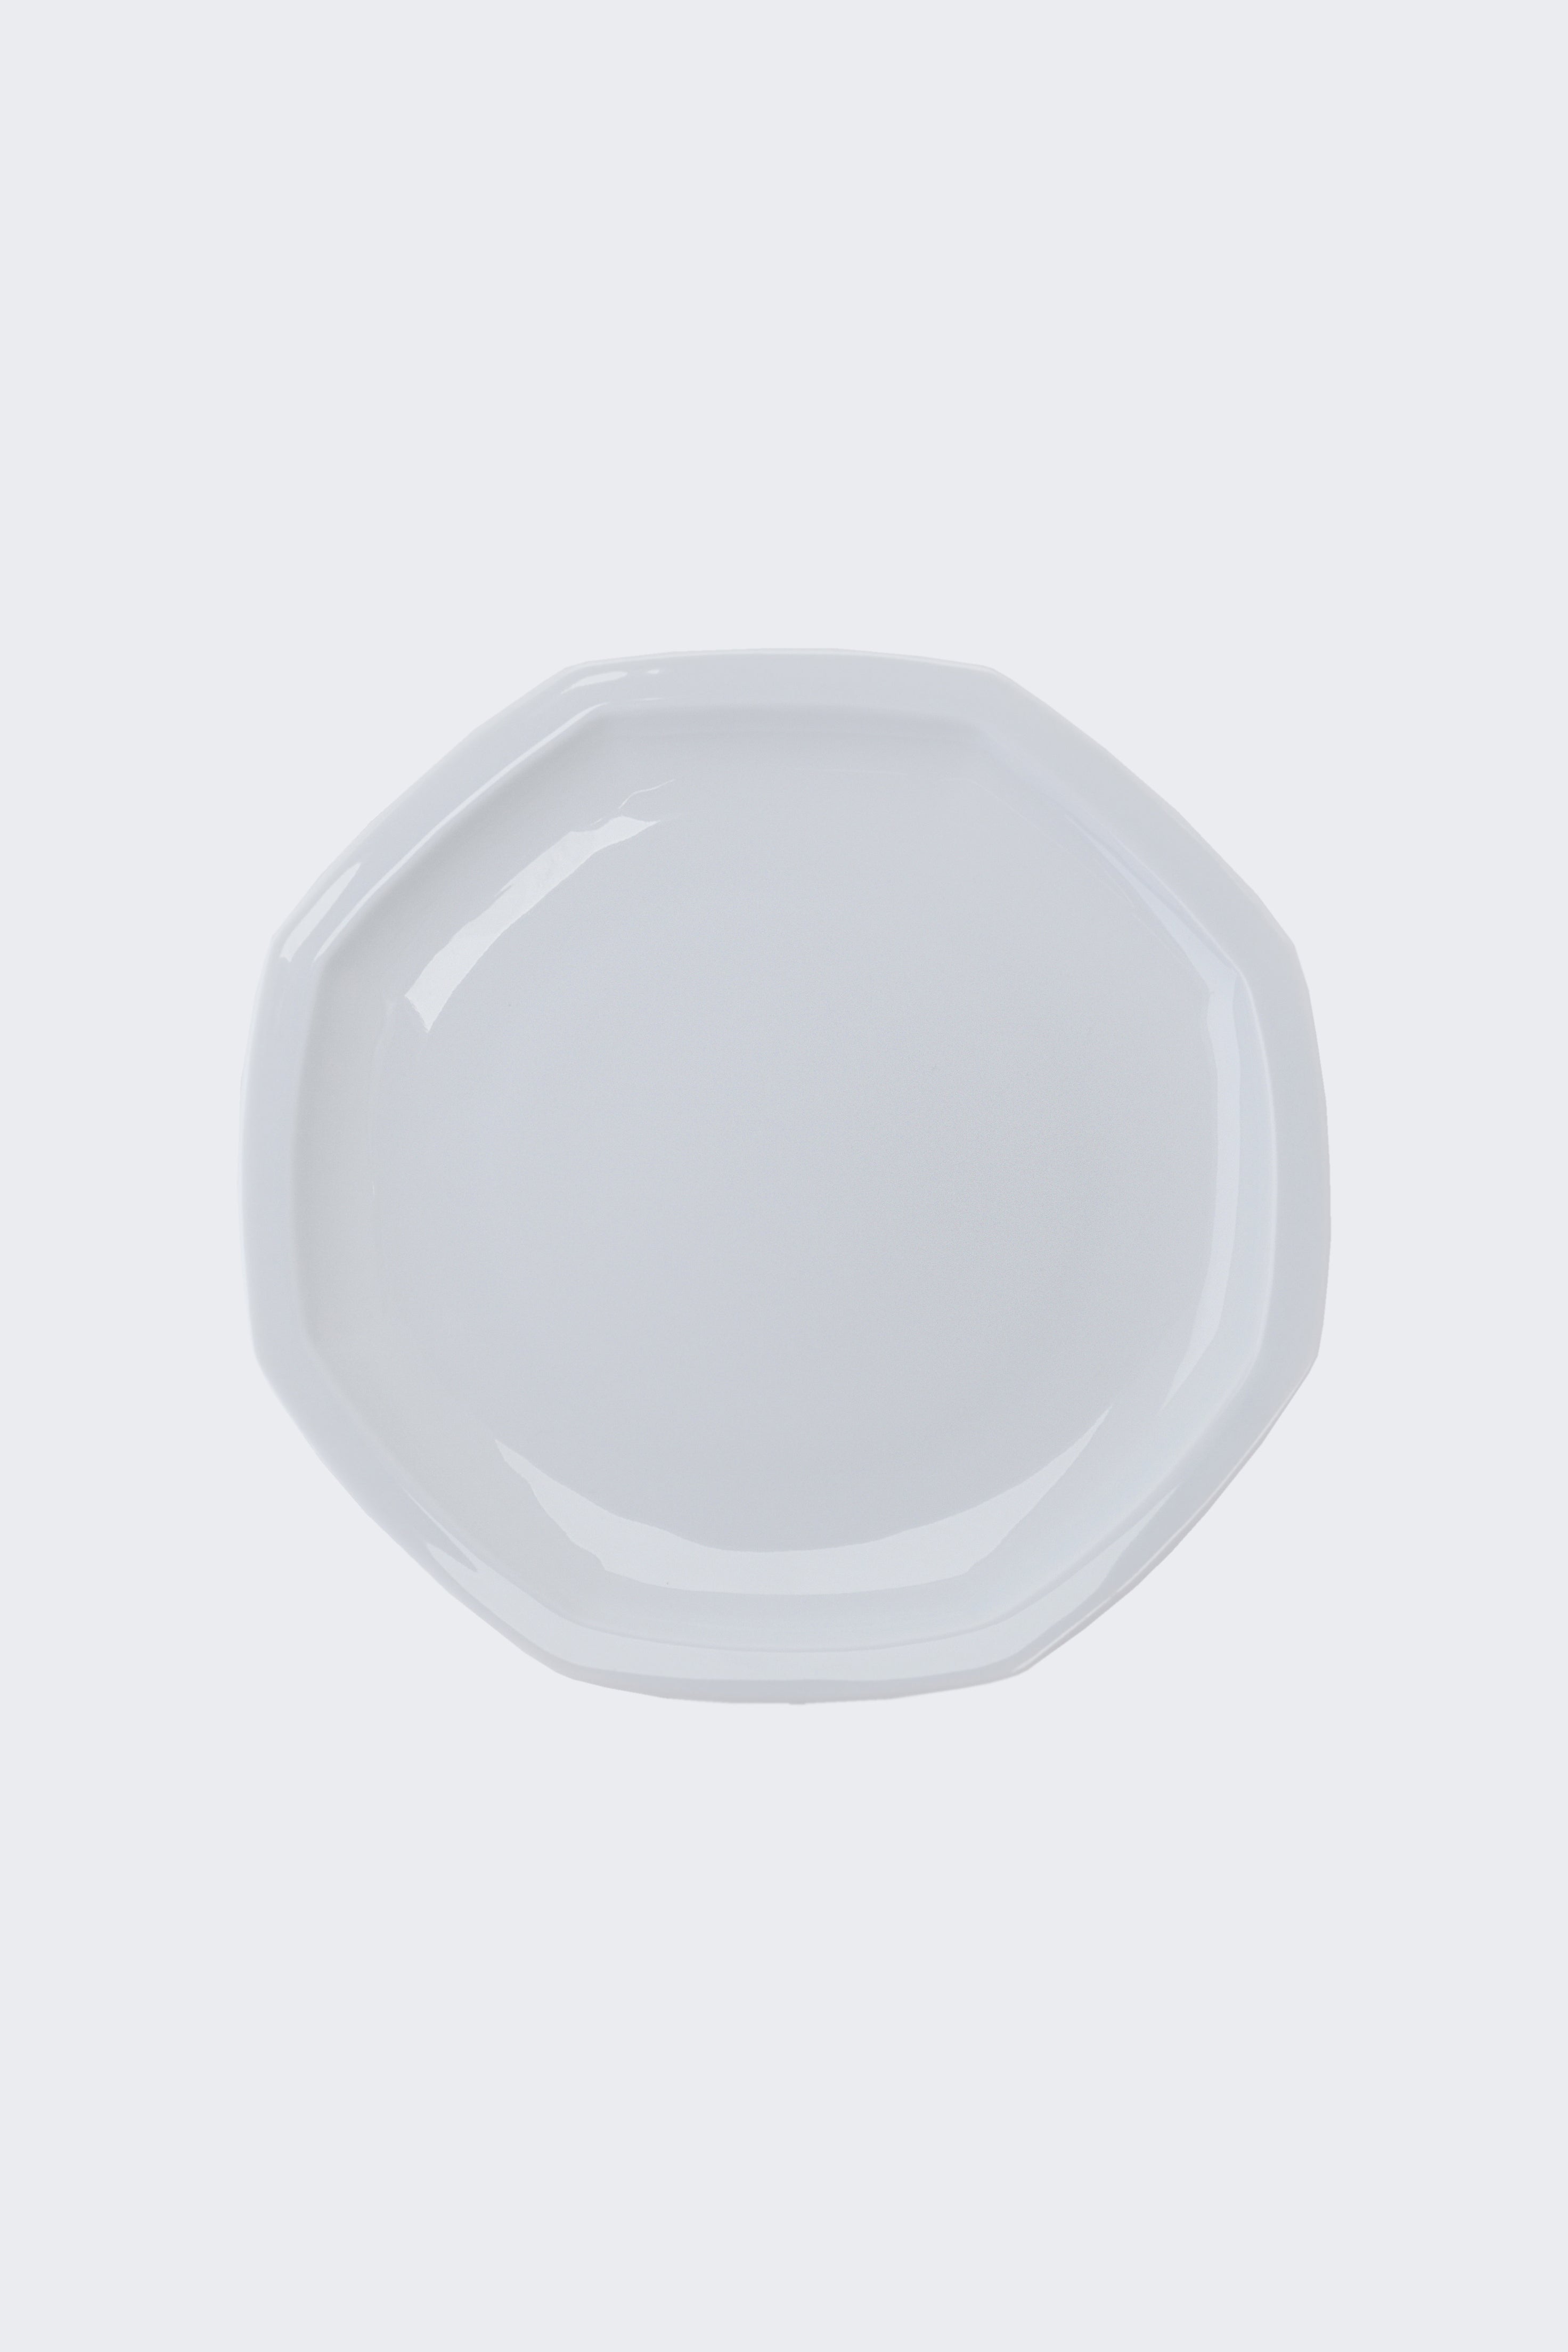 Octangle dinner plate white-Ogre-[interior]-[design]-KIOSK48TH